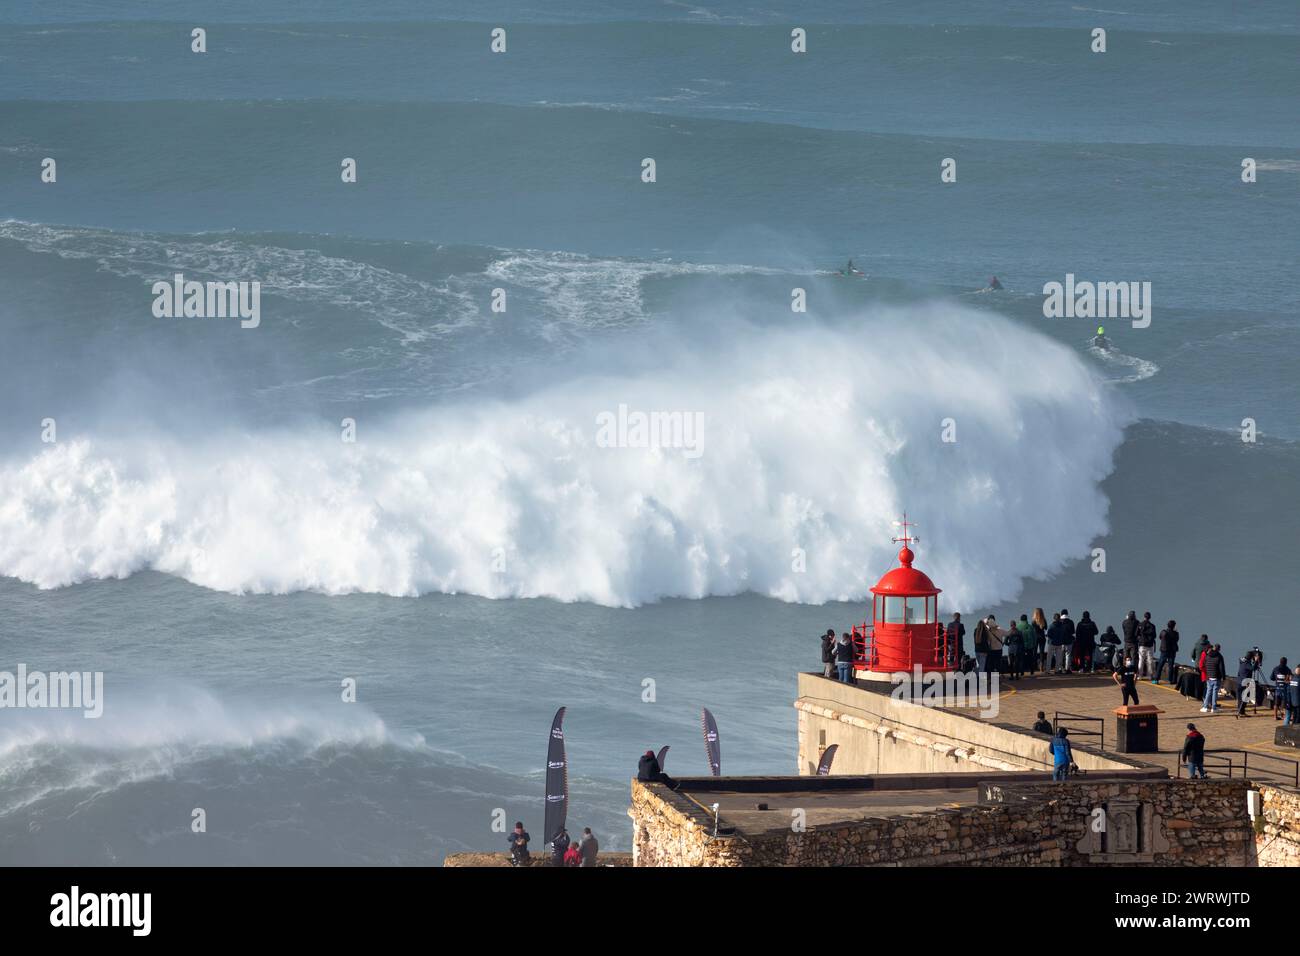 Europa, Portugal, Region Oeste, Nazaré, Besucher beobachten die riesigen Wellen von Forte de Sao Miguel Arcanjo während des Free Surfing Event 2022 Stockfoto